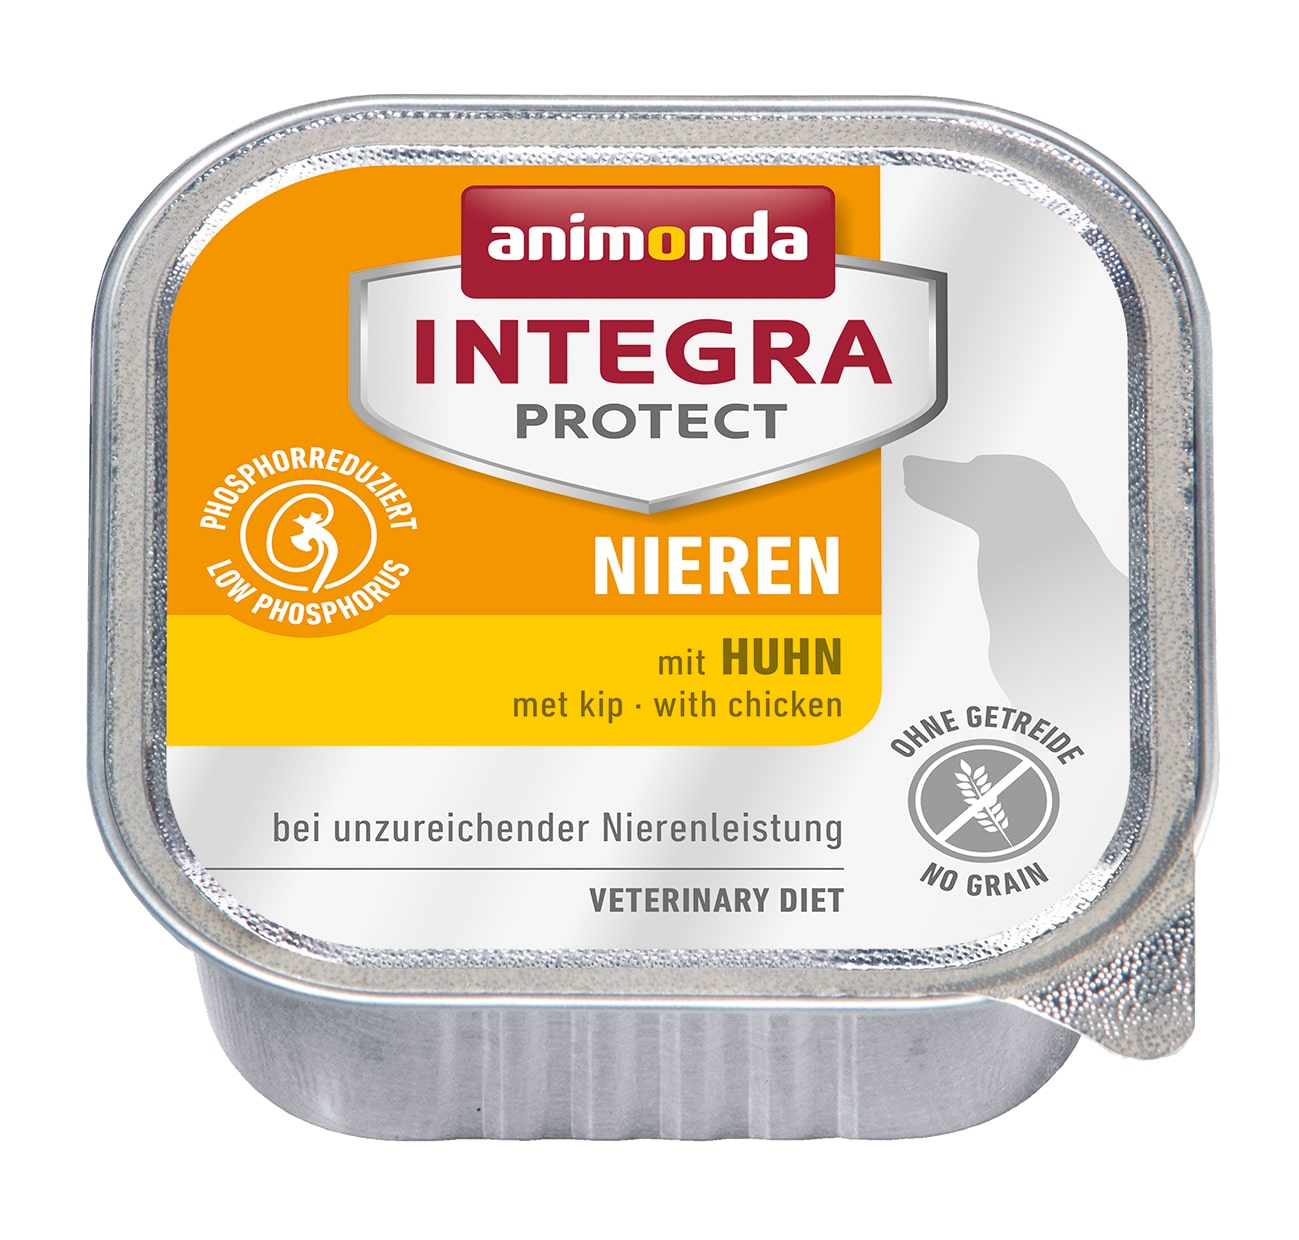 Влажный корм для взрослых собак Animonda Integra Protect Dog Nieren (RENAL) with Chicken при хронической почечной недостаточности, с курицей 150 г х 11 шт.